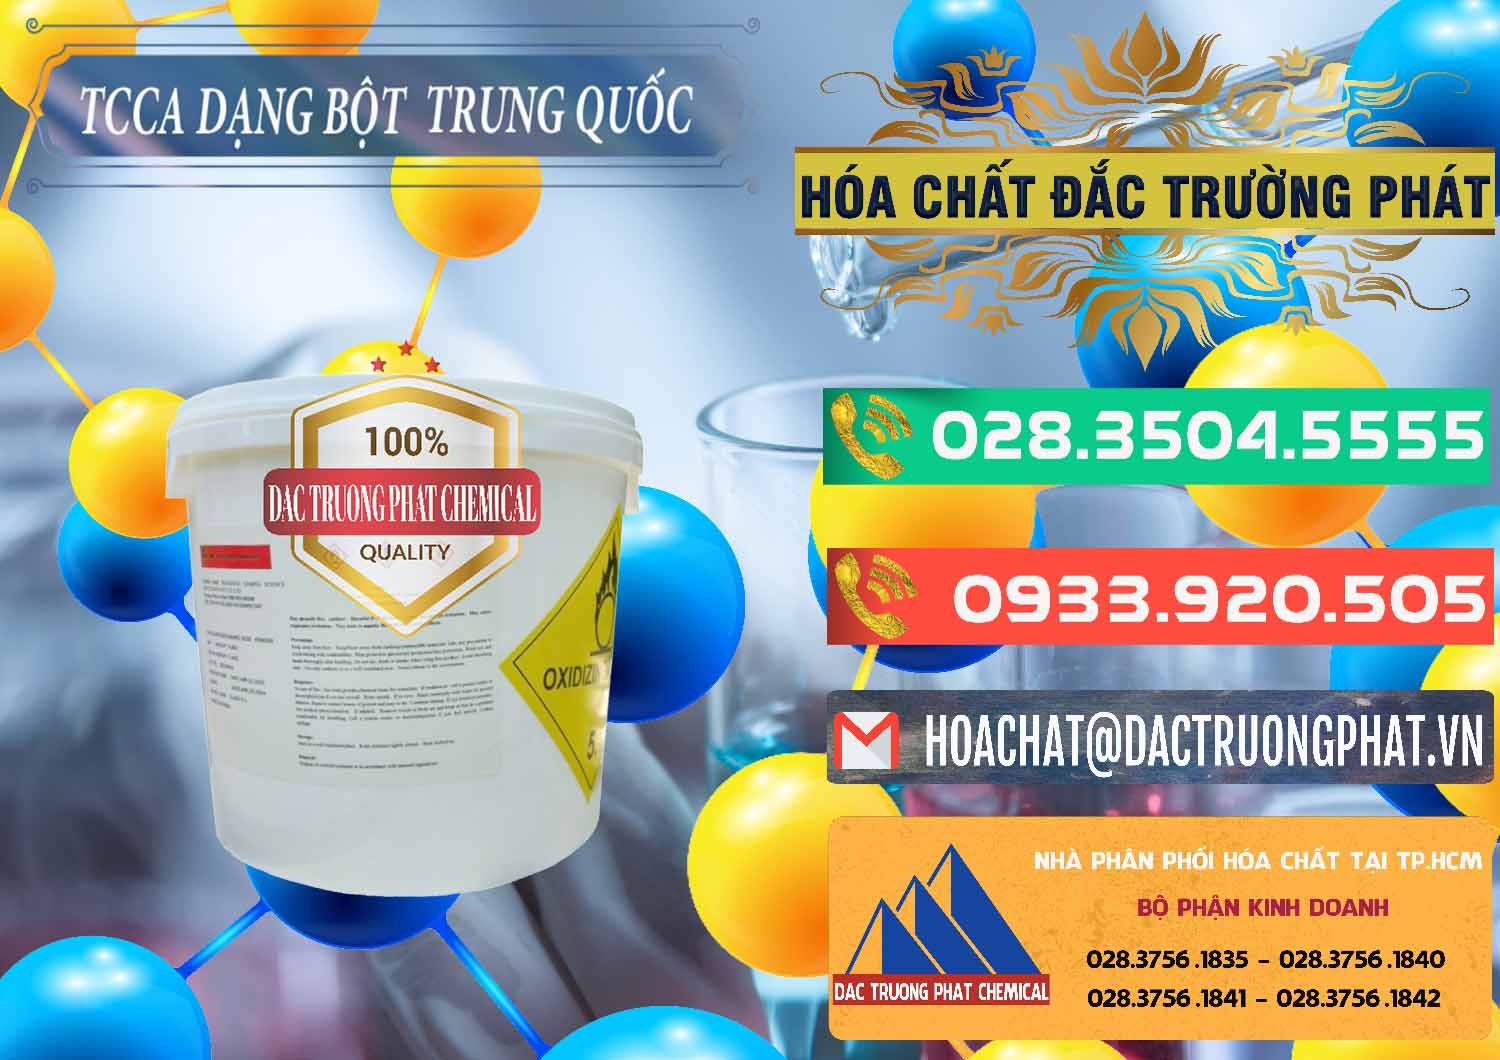 Công ty bán - cung cấp TCCA - Acid Trichloroisocyanuric Dạng Bột Thùng 5kg Trung Quốc China - 0378 - Cty chuyên cung cấp - bán hóa chất tại TP.HCM - congtyhoachat.com.vn